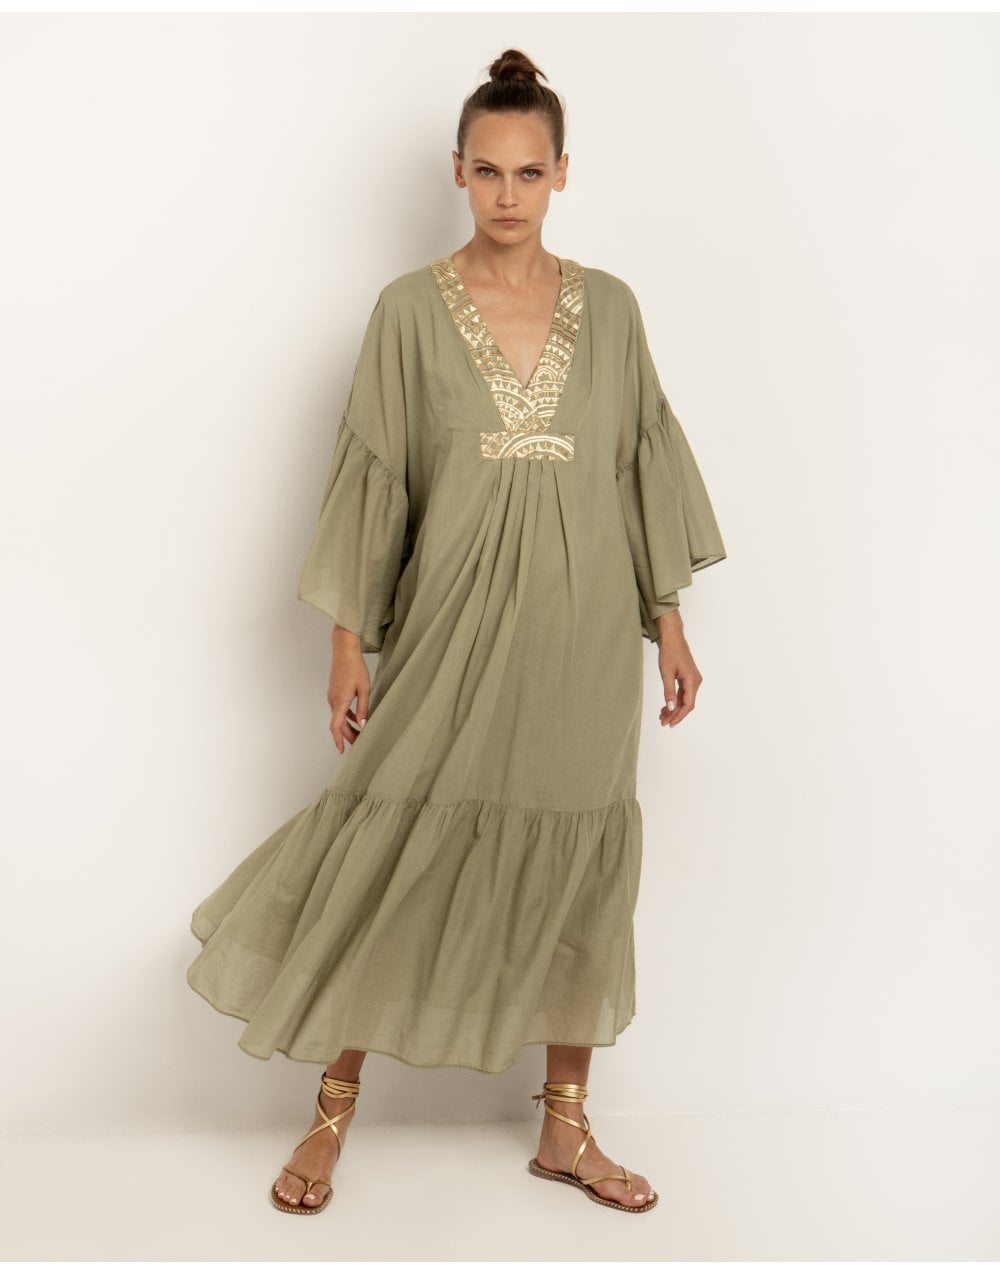 Greek Archaic Kori Greek Archaic Kori New Triangle Frill Sleeve Kaftan Dress Col: Tea Gol size S